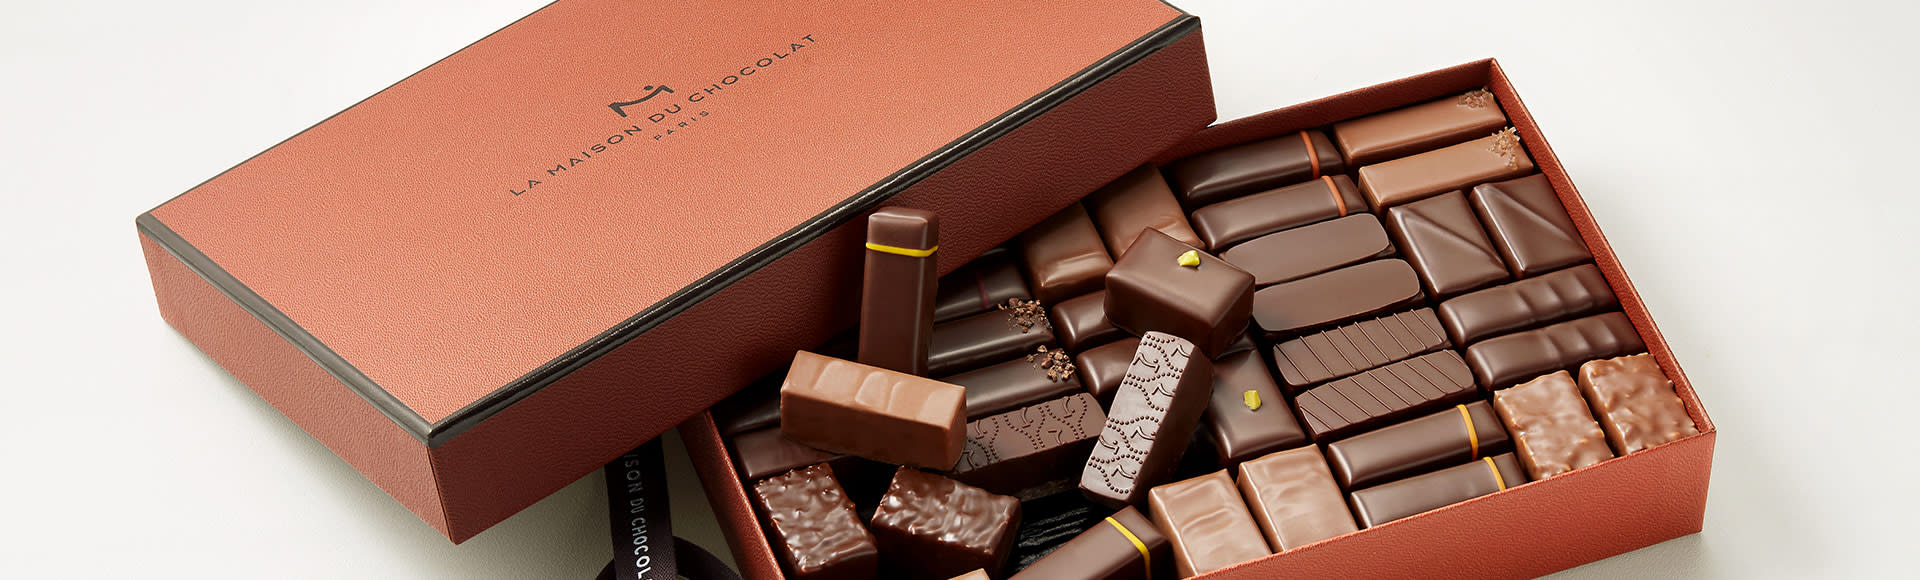 Offrir des chocolats - La Maison du Chocolat